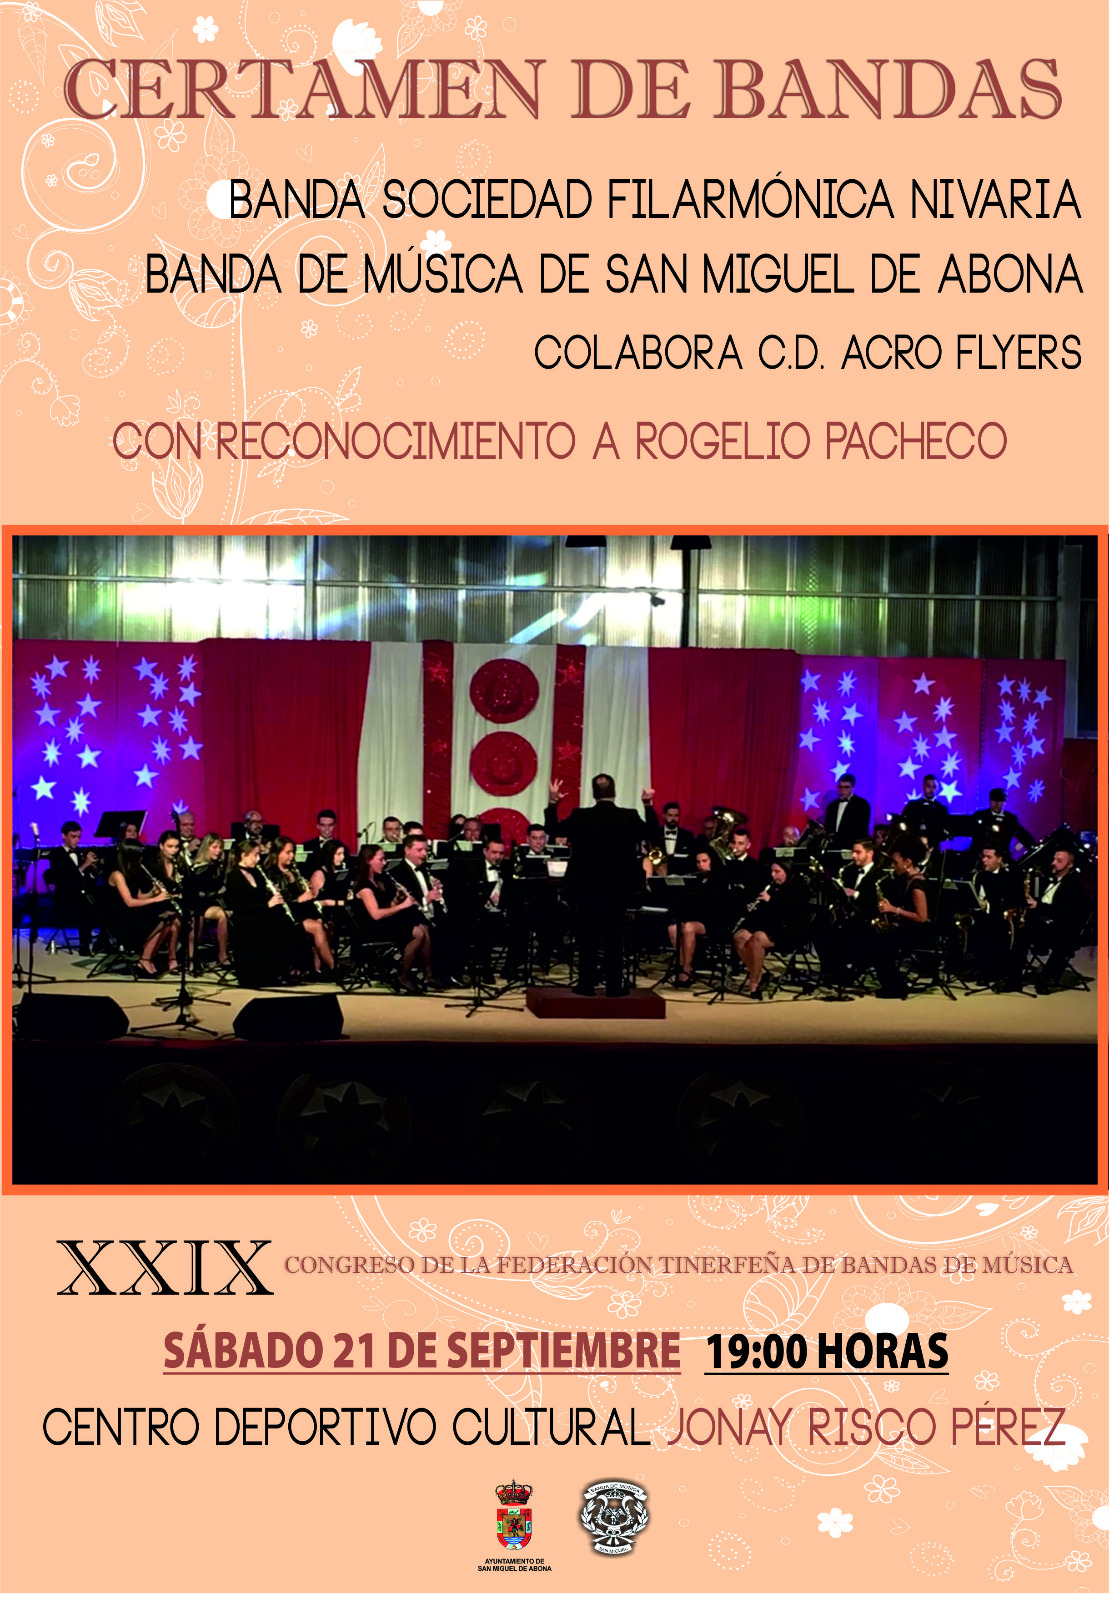 San Miguel celebra el Certamen de Bandas enmarcado en el XXIX Congreso de la Federación tinerfeña de Bandas de Música